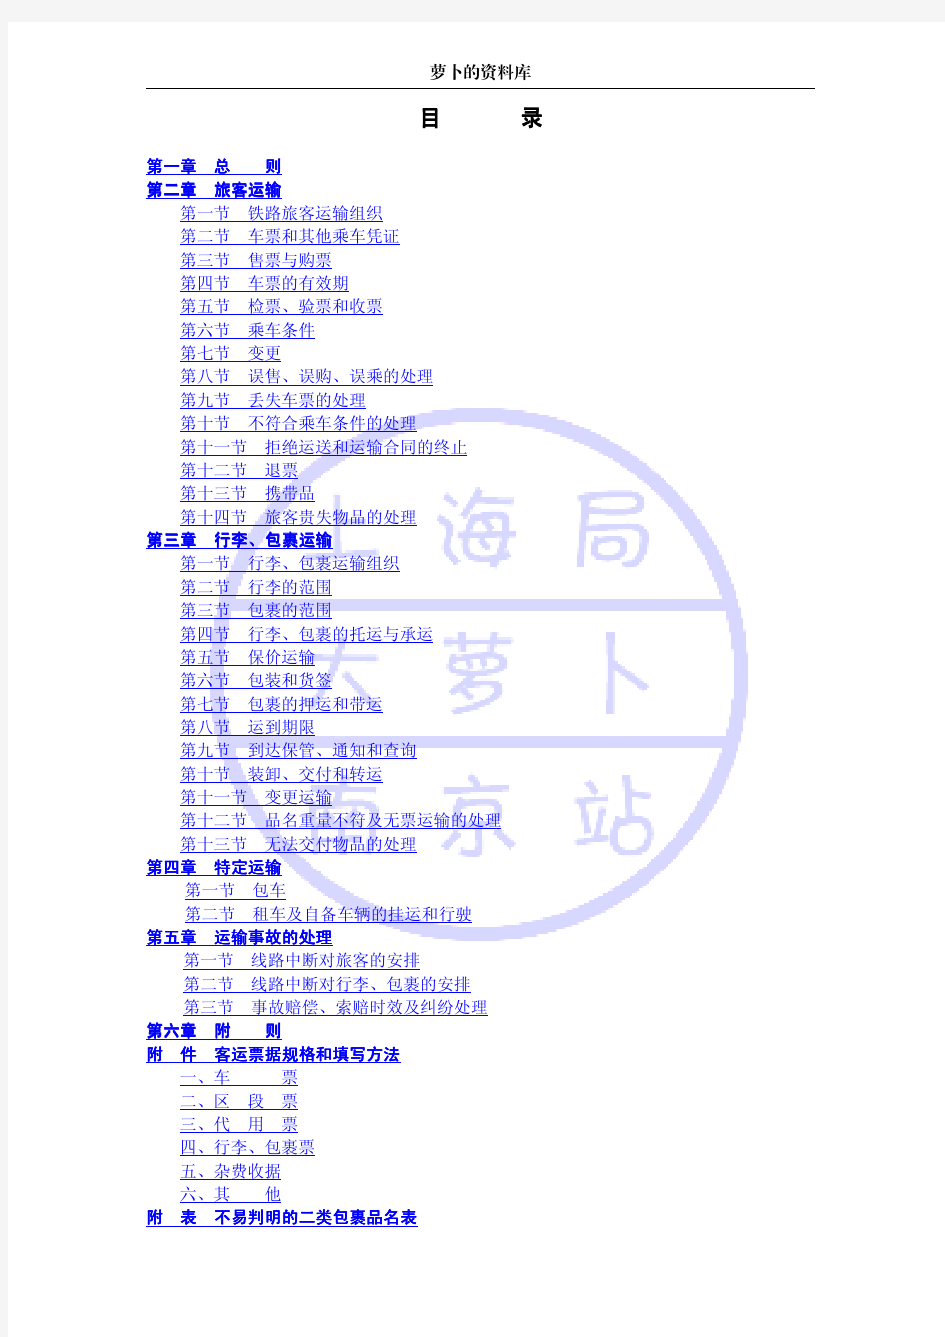 中华人民共和国铁道部《铁路旅客运输办理细则》(版本号20130101)